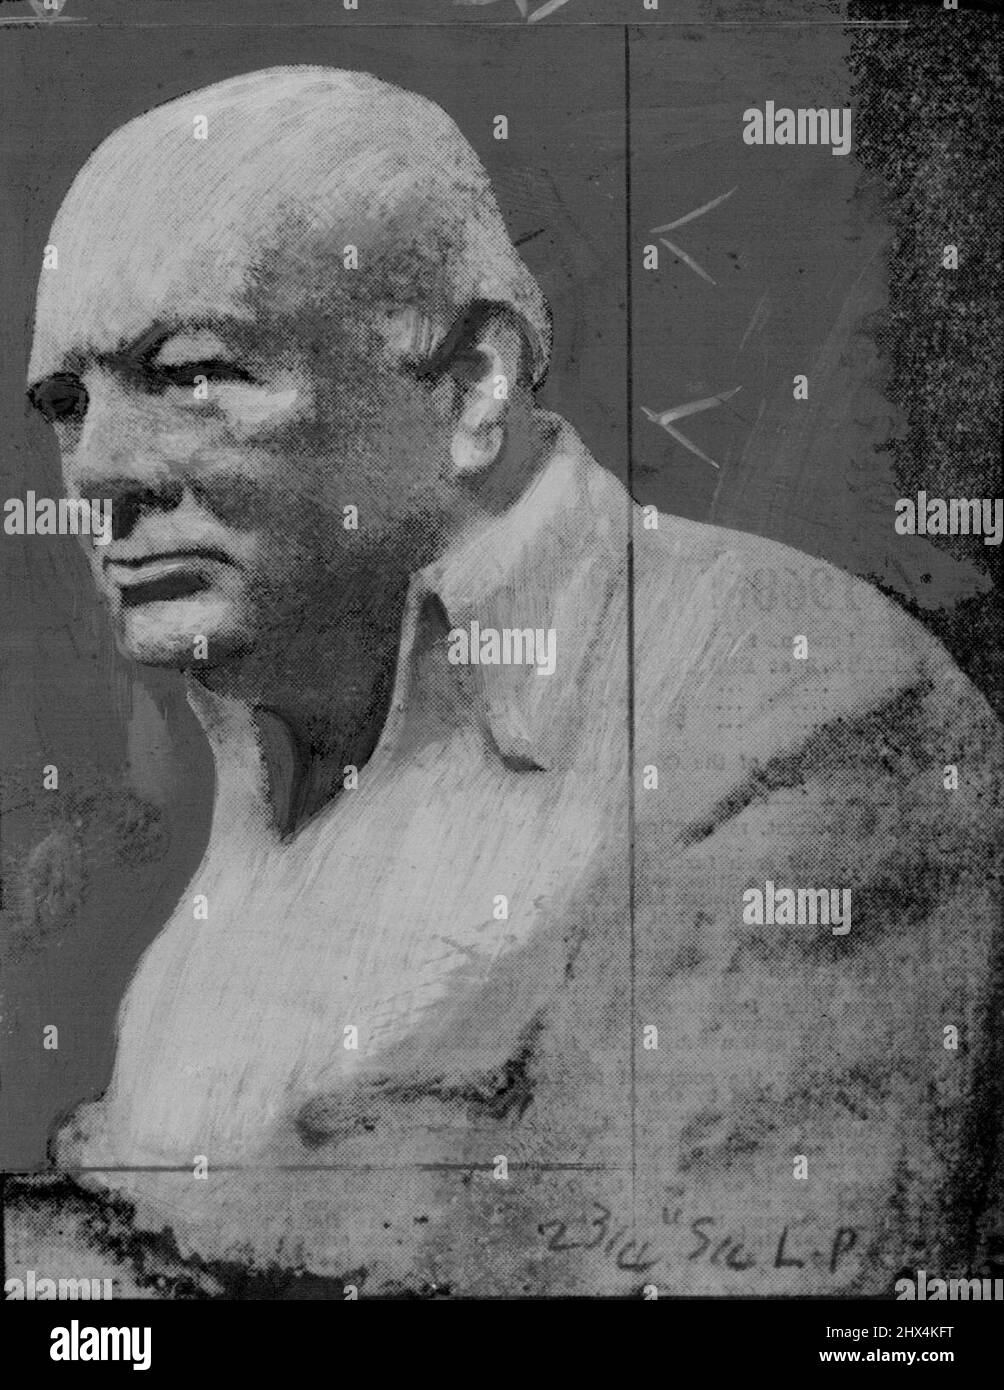 Winston Churchill - Leader. May 10, 1953. Stock Photo